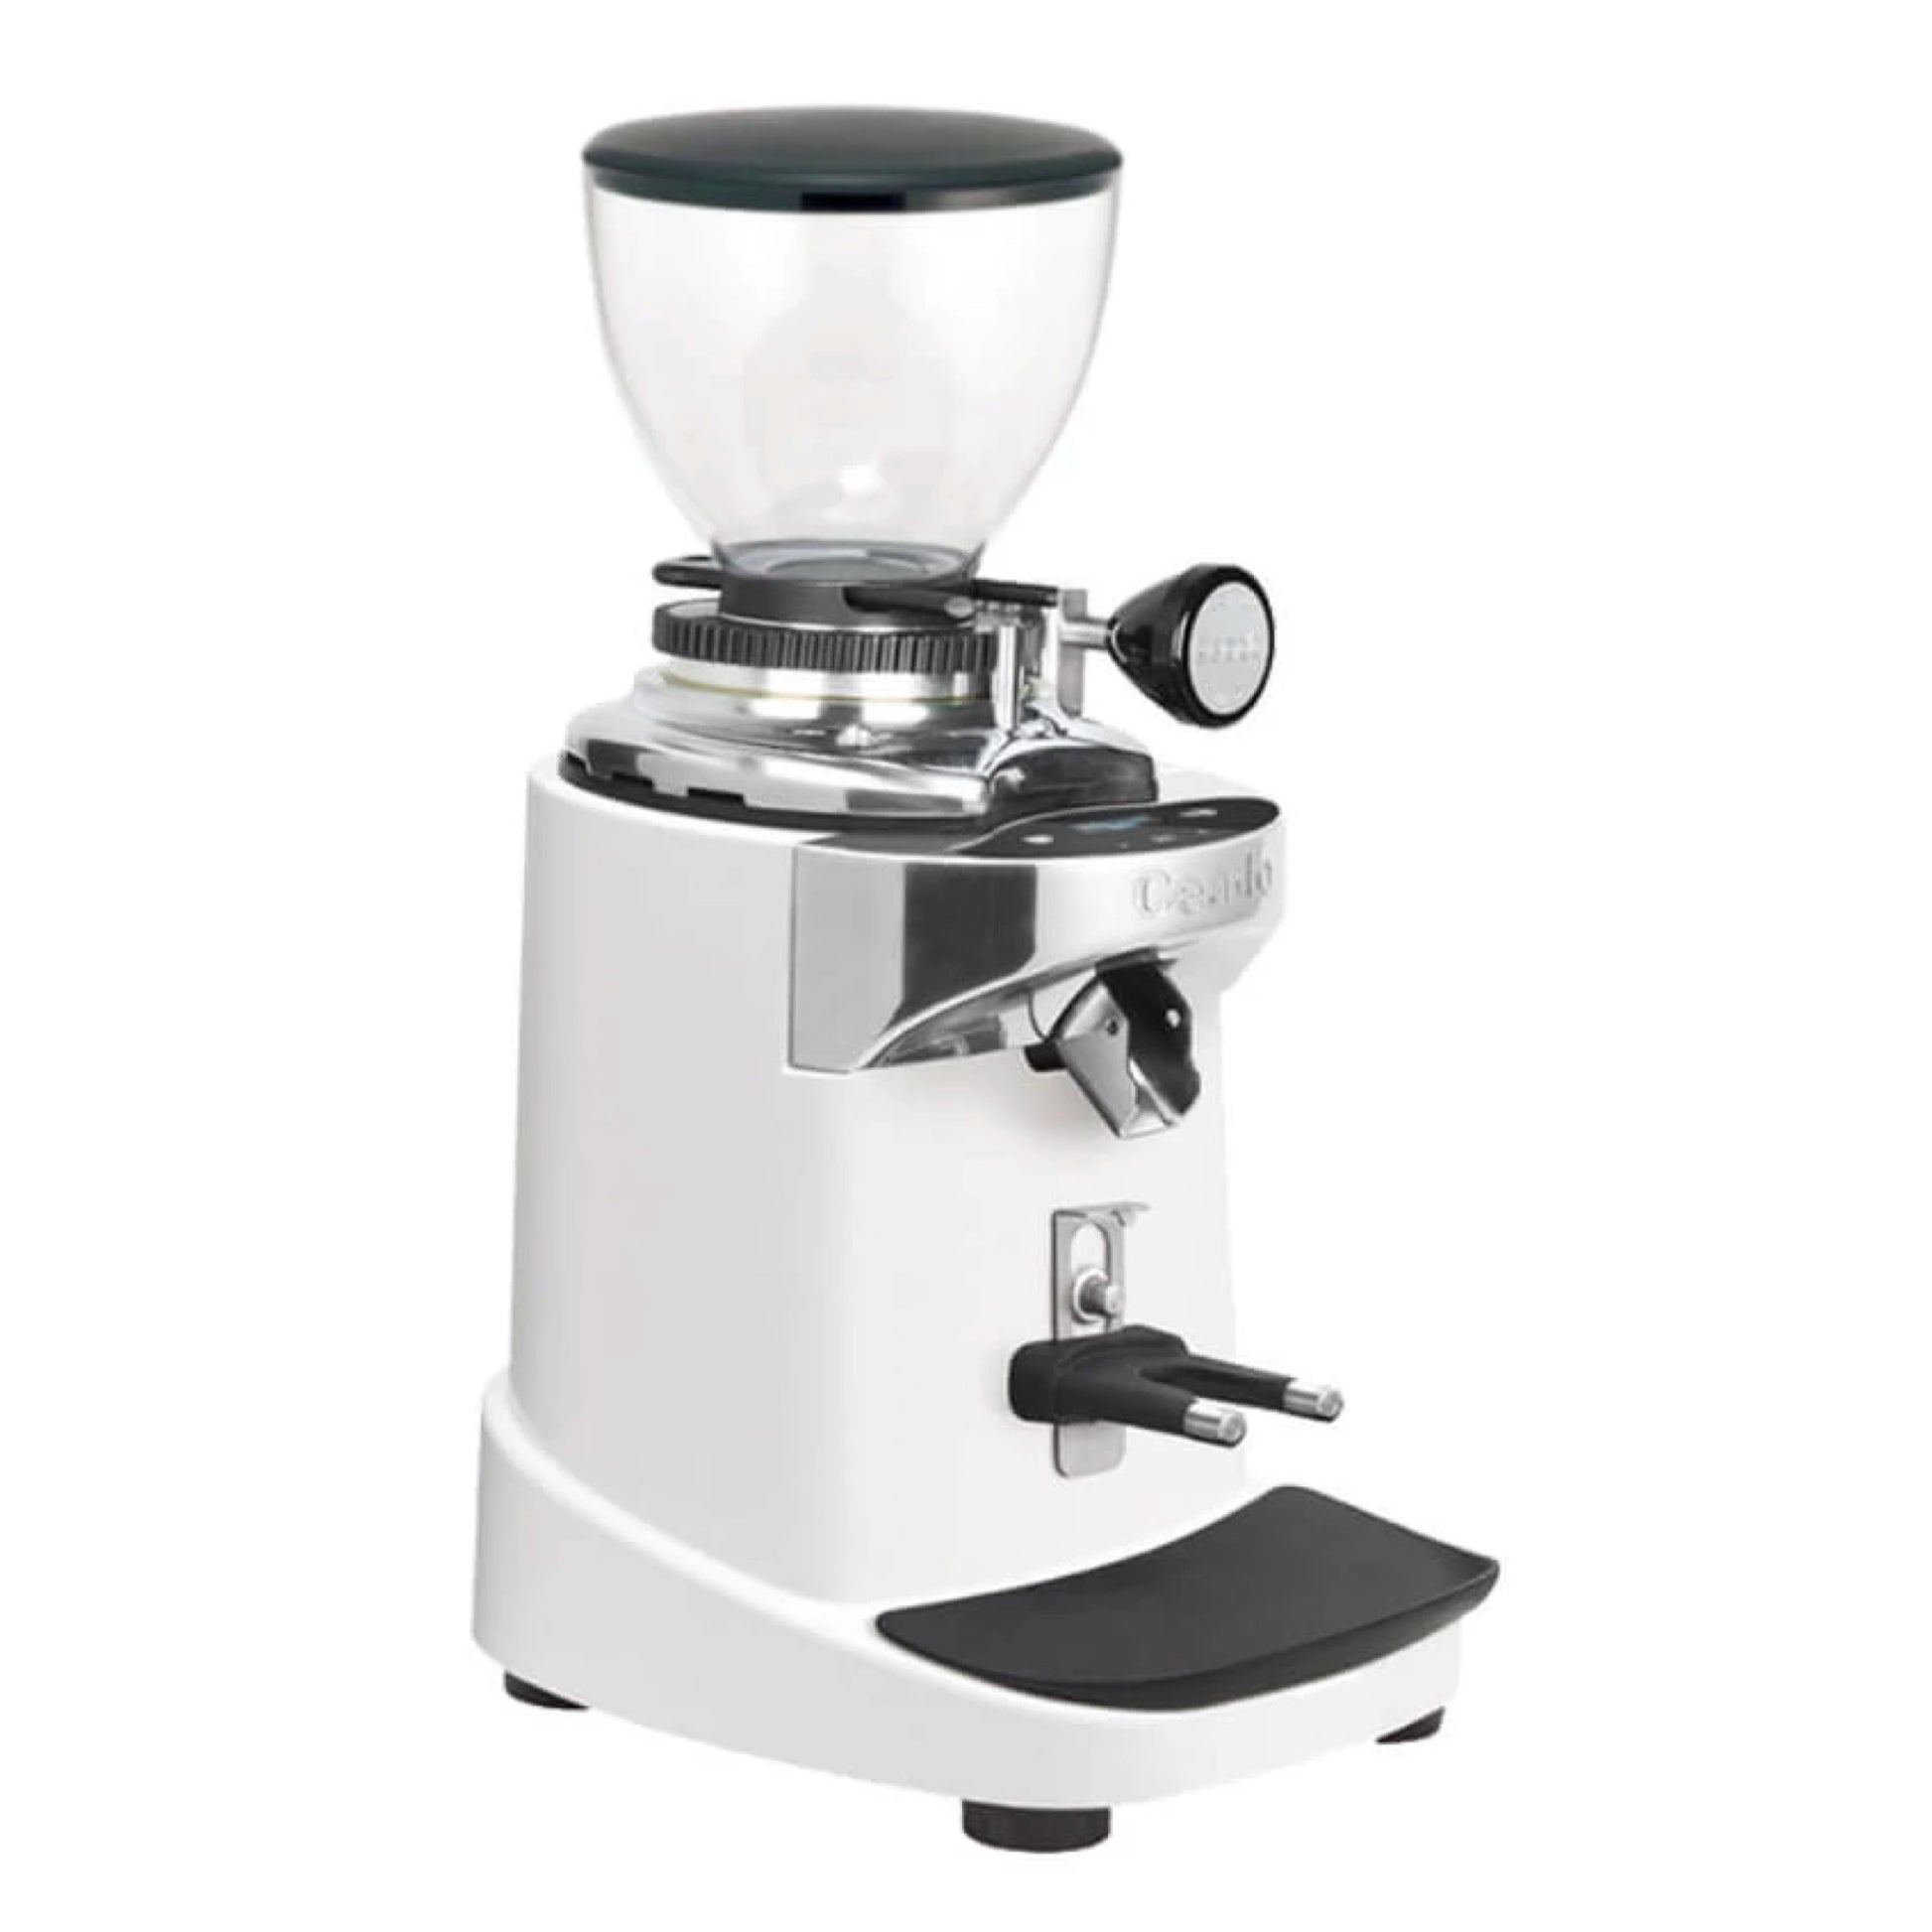 Ceado Coffee grinder E37S - Gigi-grinder